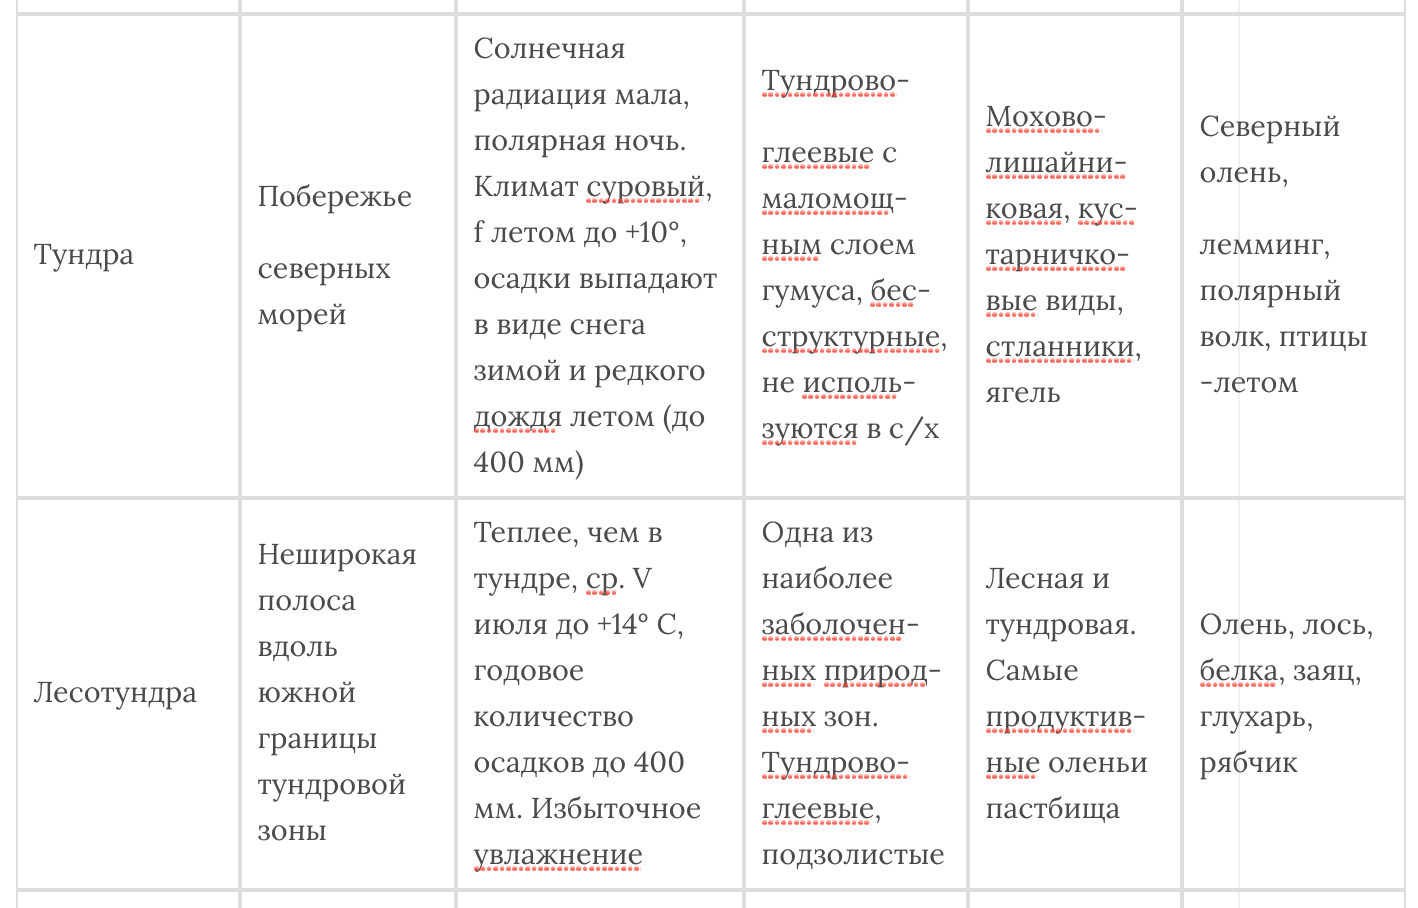 Сравнительная характеристика природных зон россии 8 класс